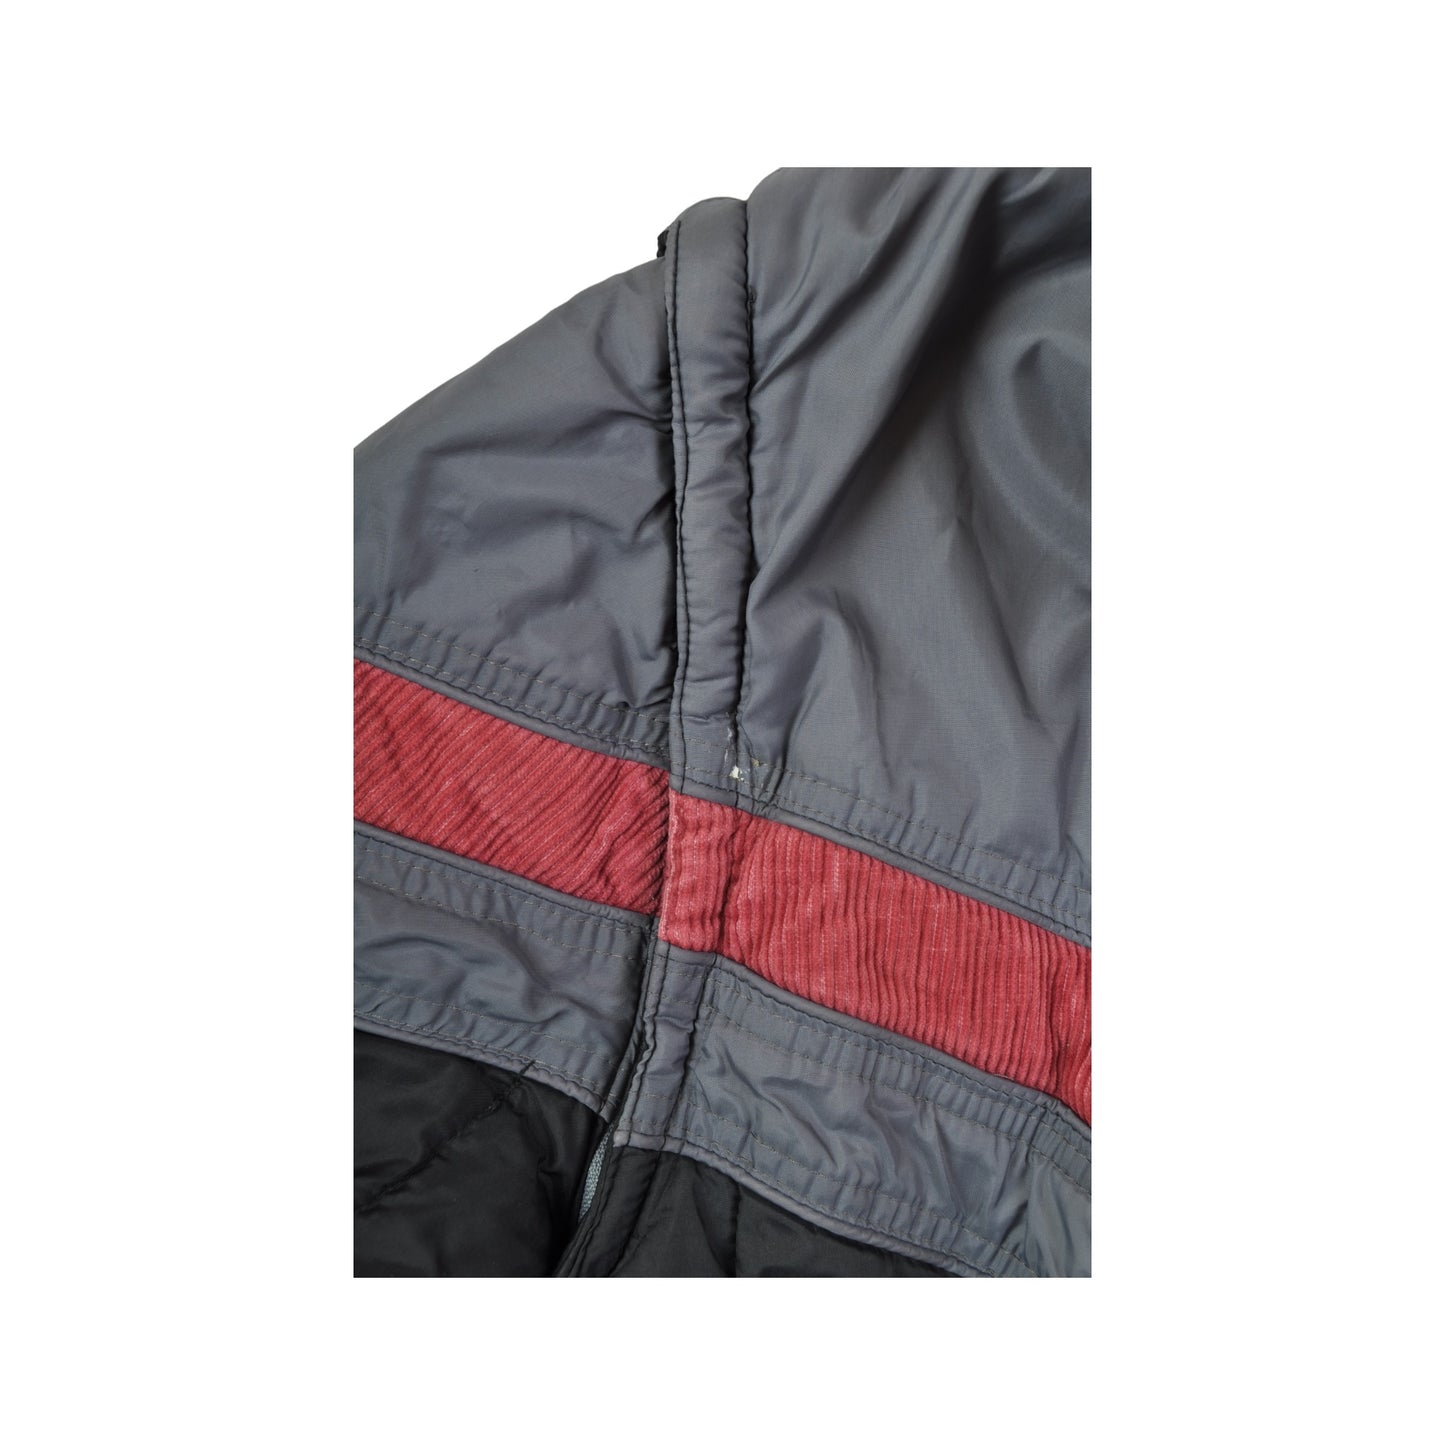 Vintage Ski Jacket Black/Grey Ladies XL